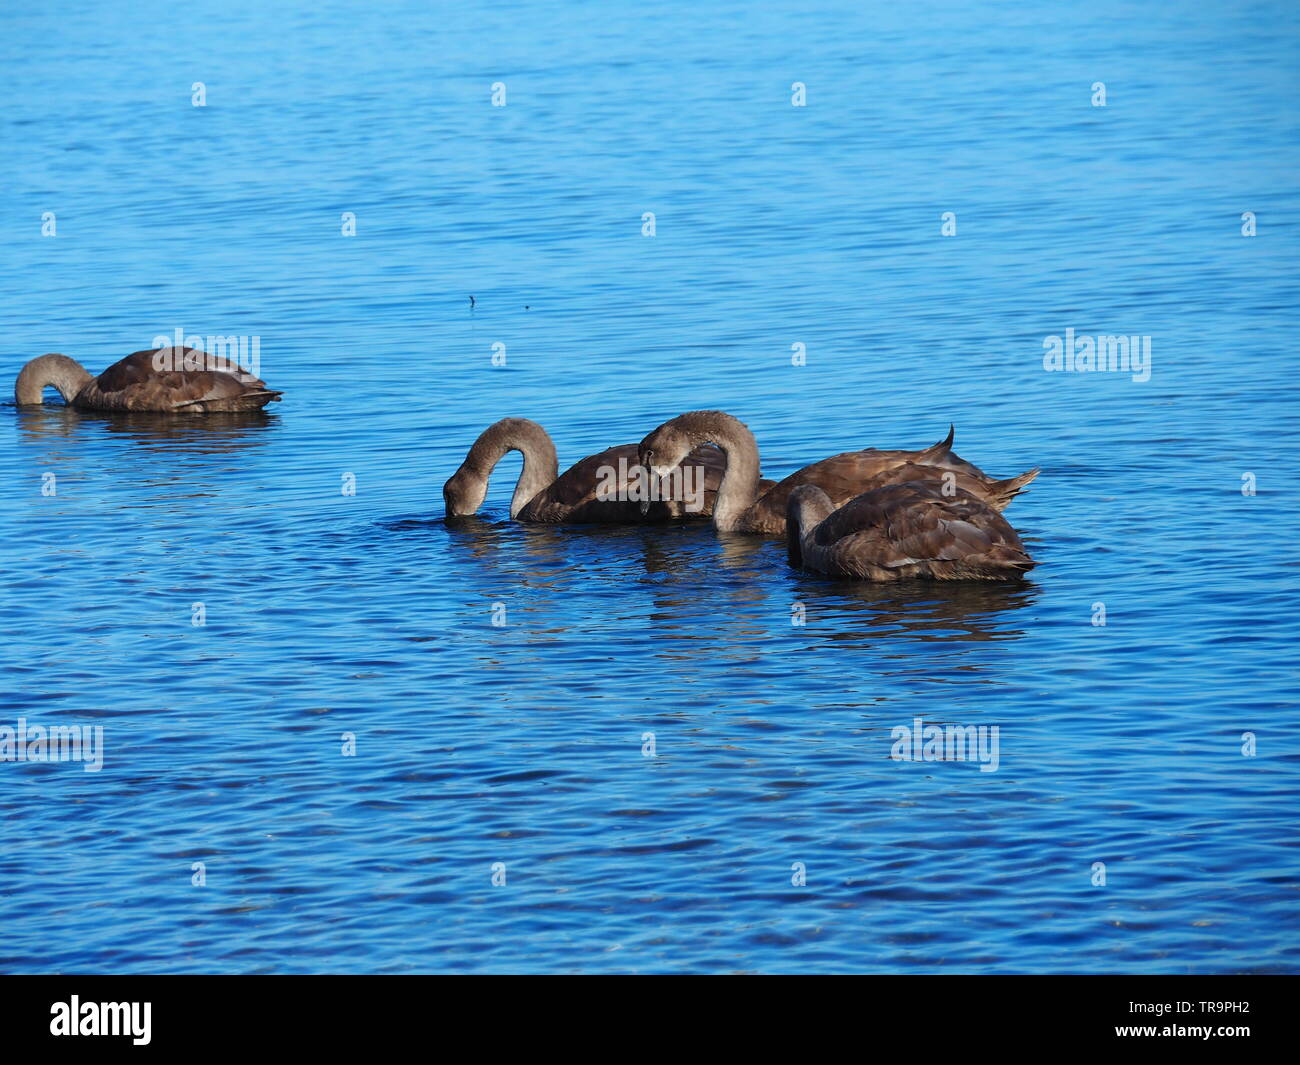 Brown gansos nadan en el mar Báltico Foto de stock